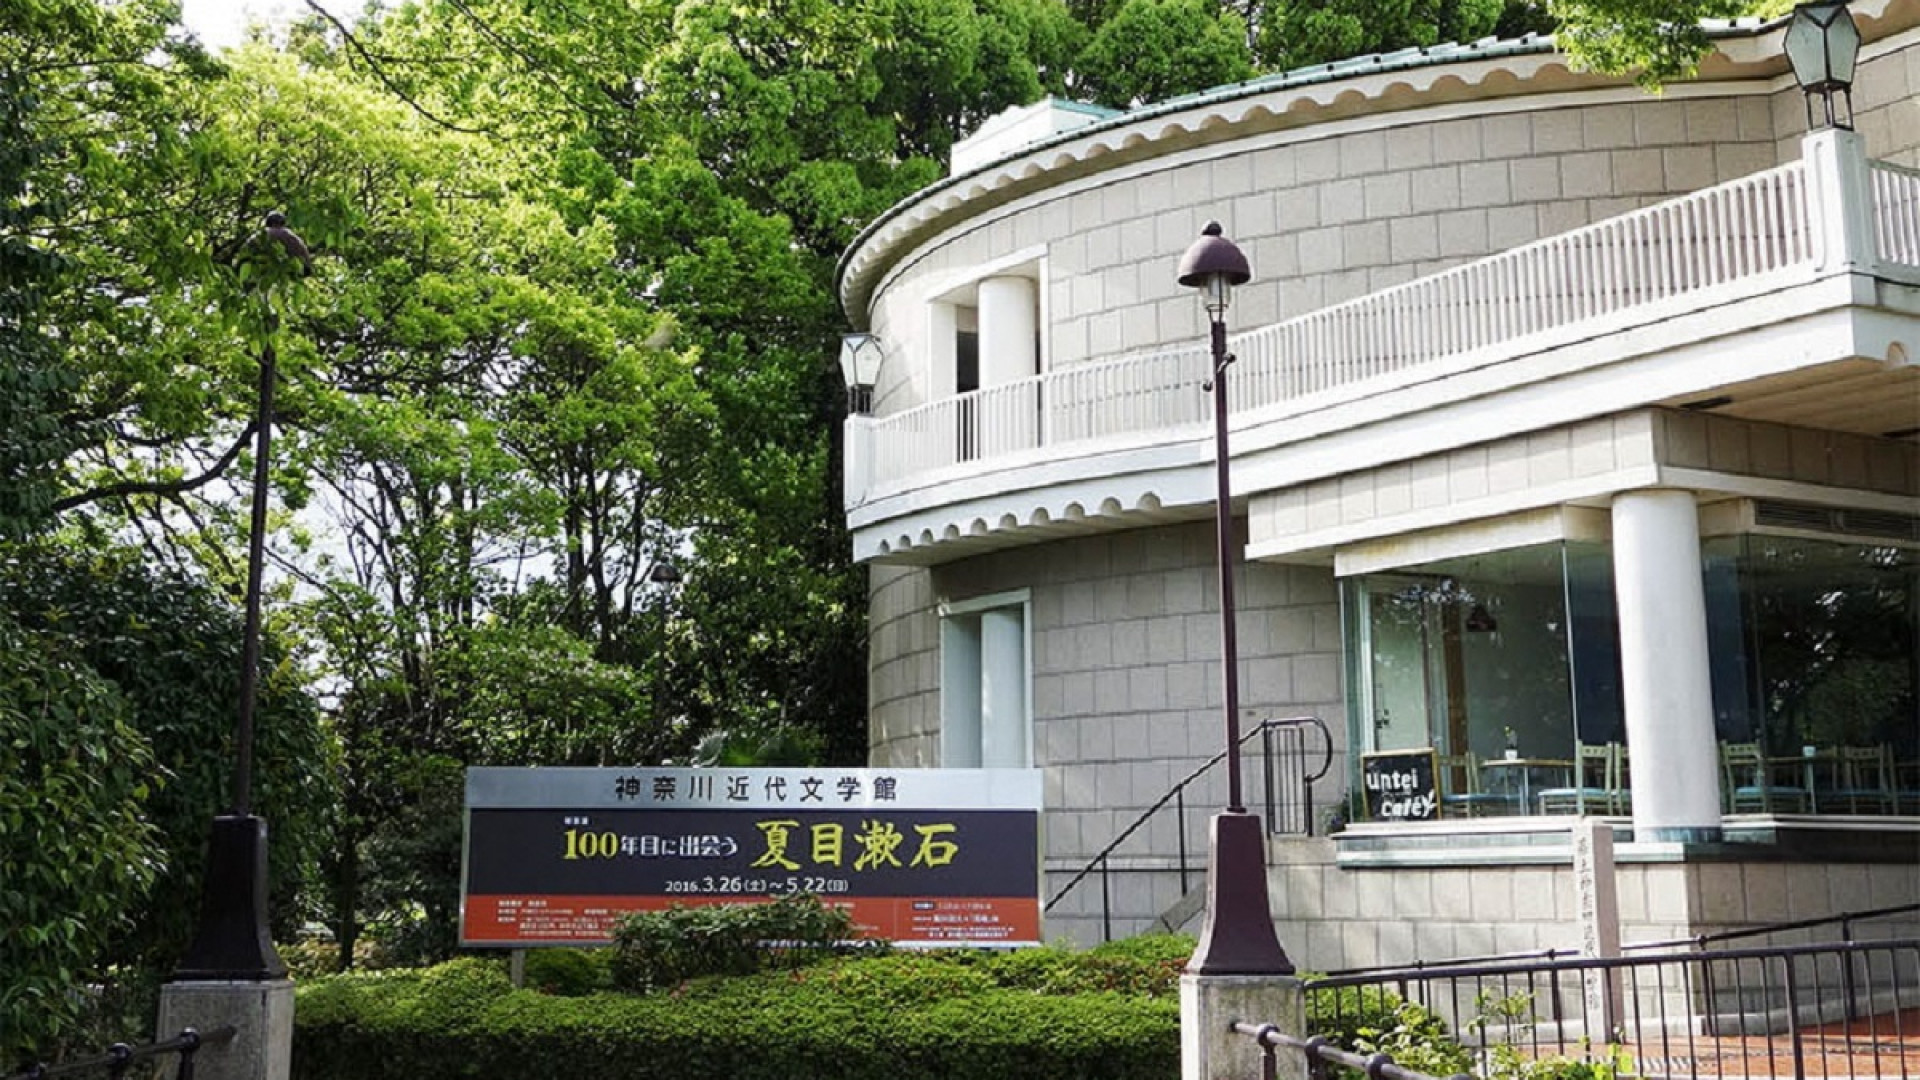 Kanagawa Museum für moderne Literatur